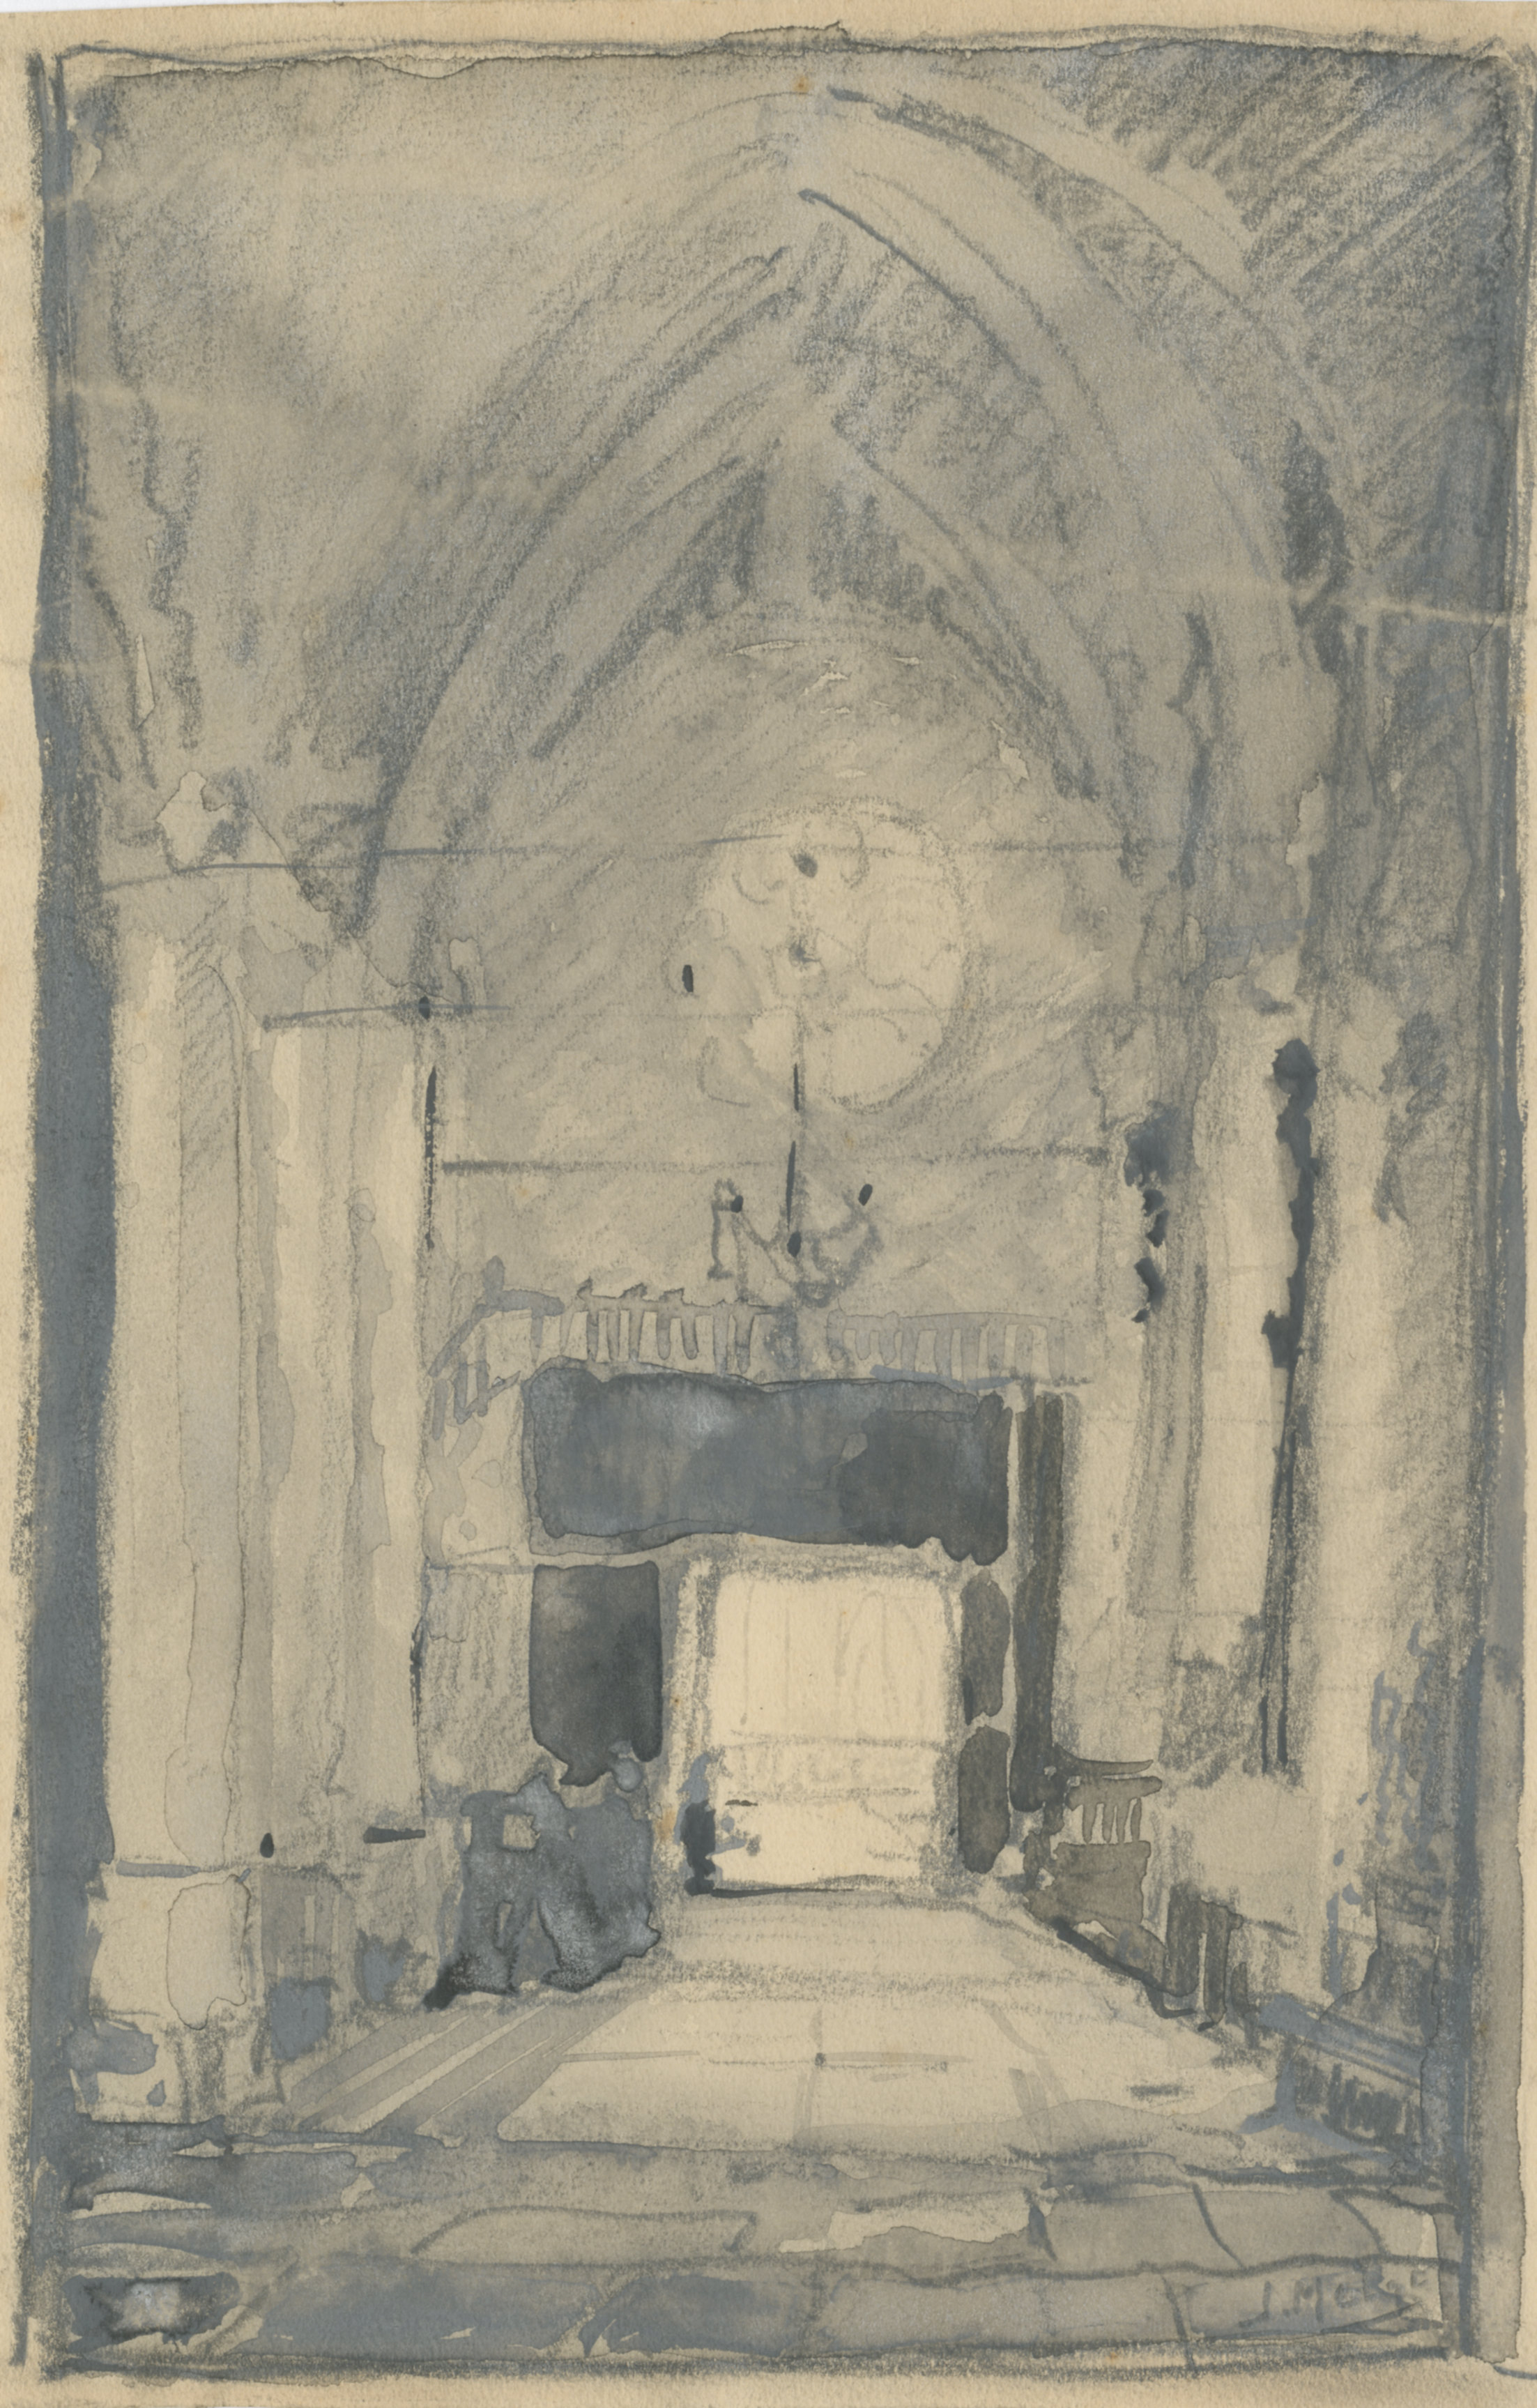 Interieur van de Grote of Maria Magdalenakerk, tekening door J. Melse, ca. 1930.